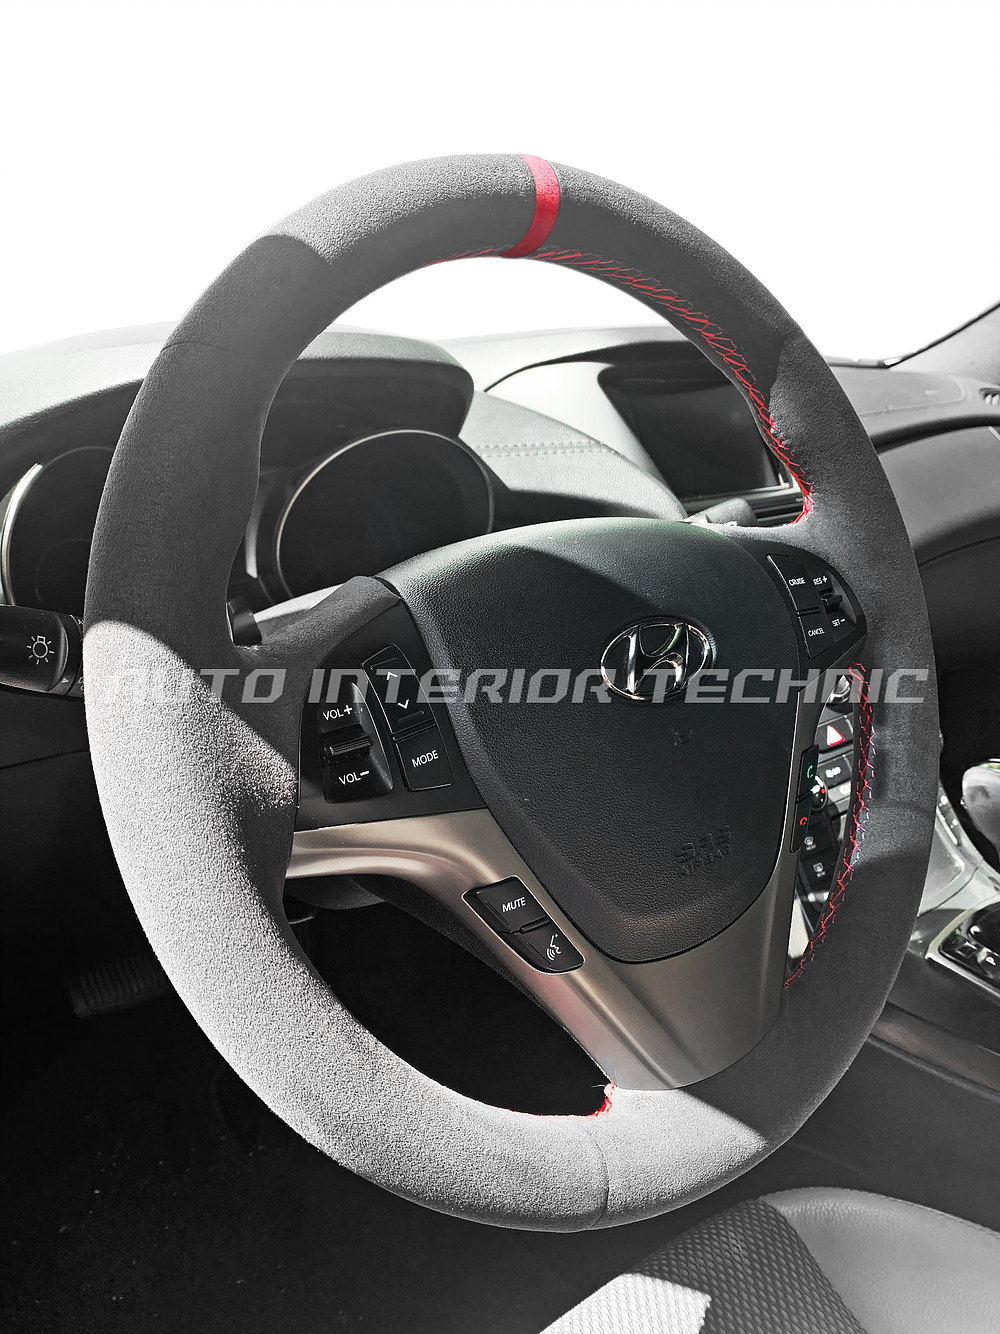 Auto Interior Technic Steering Wheel Wrap (Genesis Coupe 09-13)